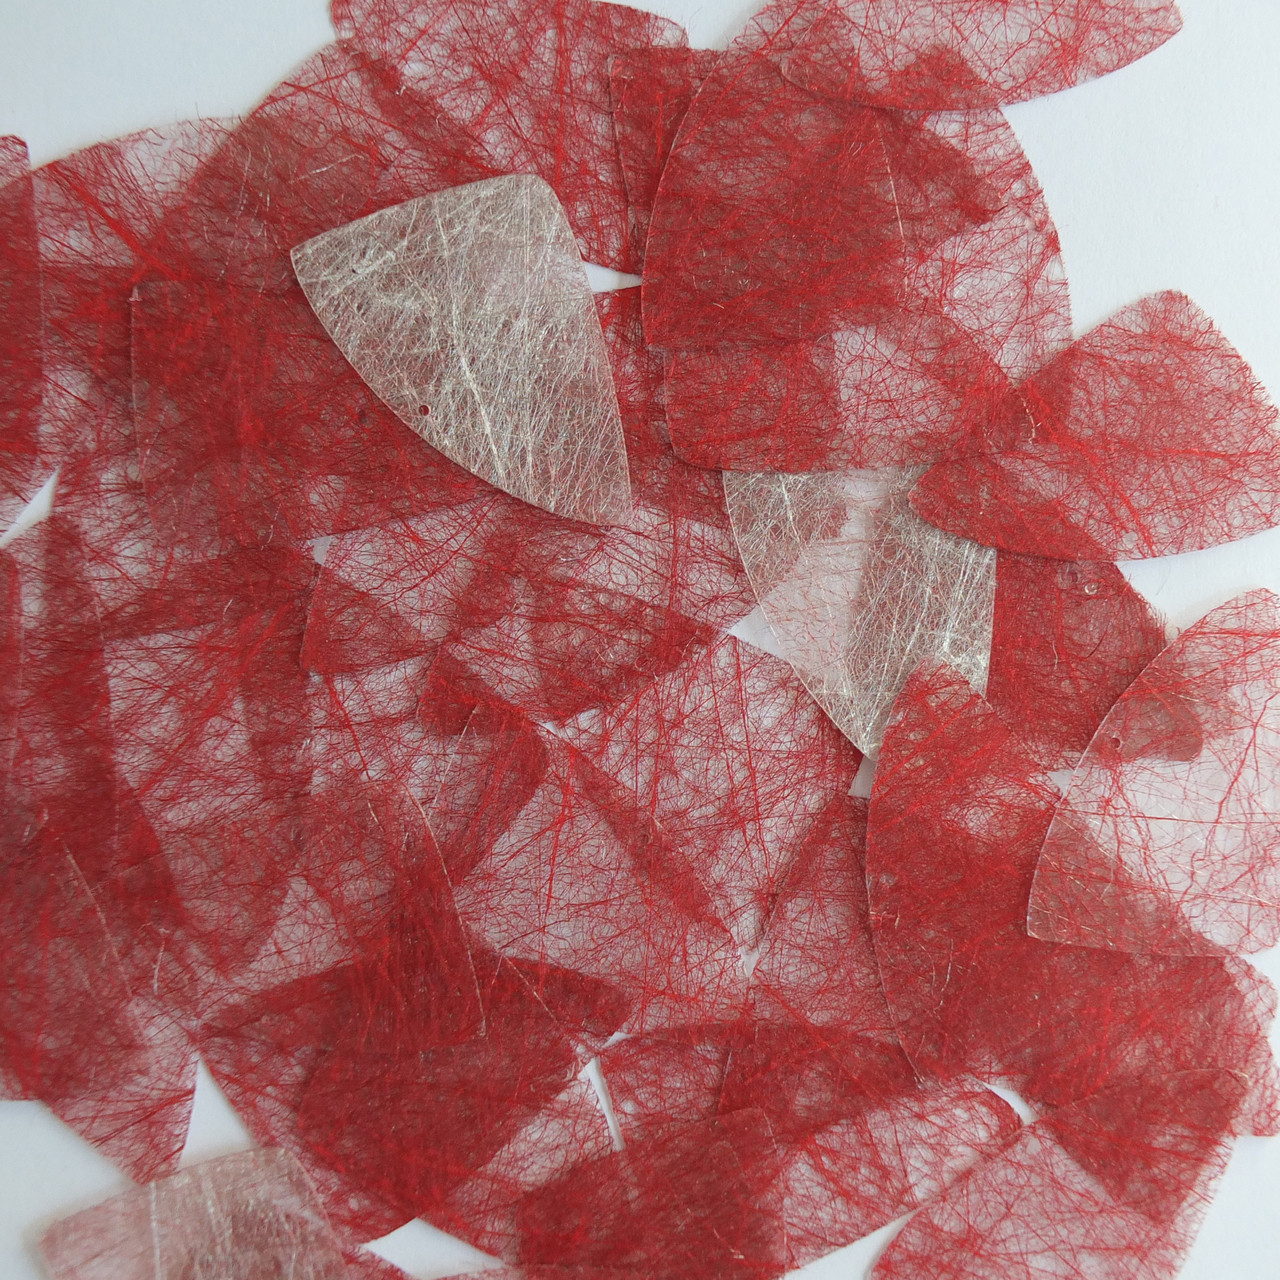 Fishscale Fin Sequin 1.5" Red Silky Fiber Strand Fabric